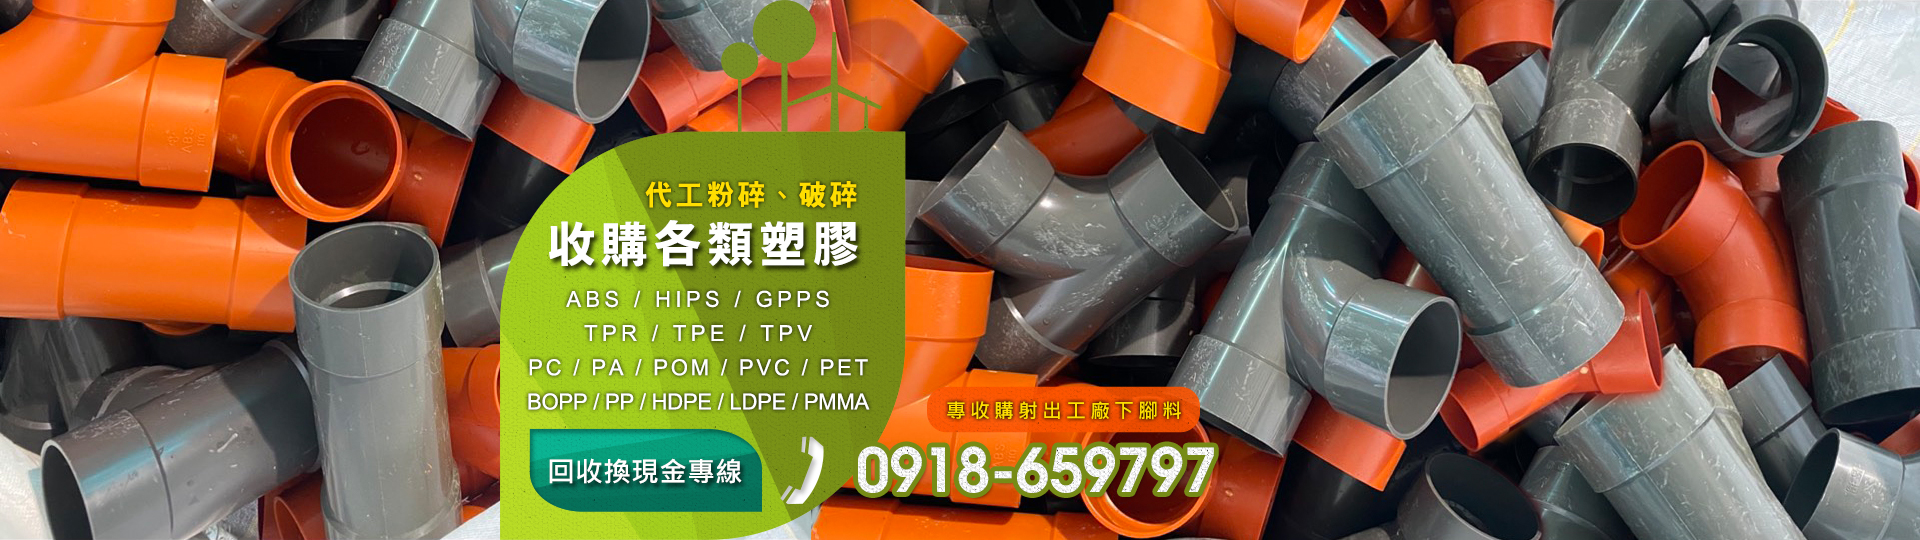 各類塑膠資源回收︱PMMA回收︱ABS回收︱PE回收︱PP回收︱PA回收︱下腳料